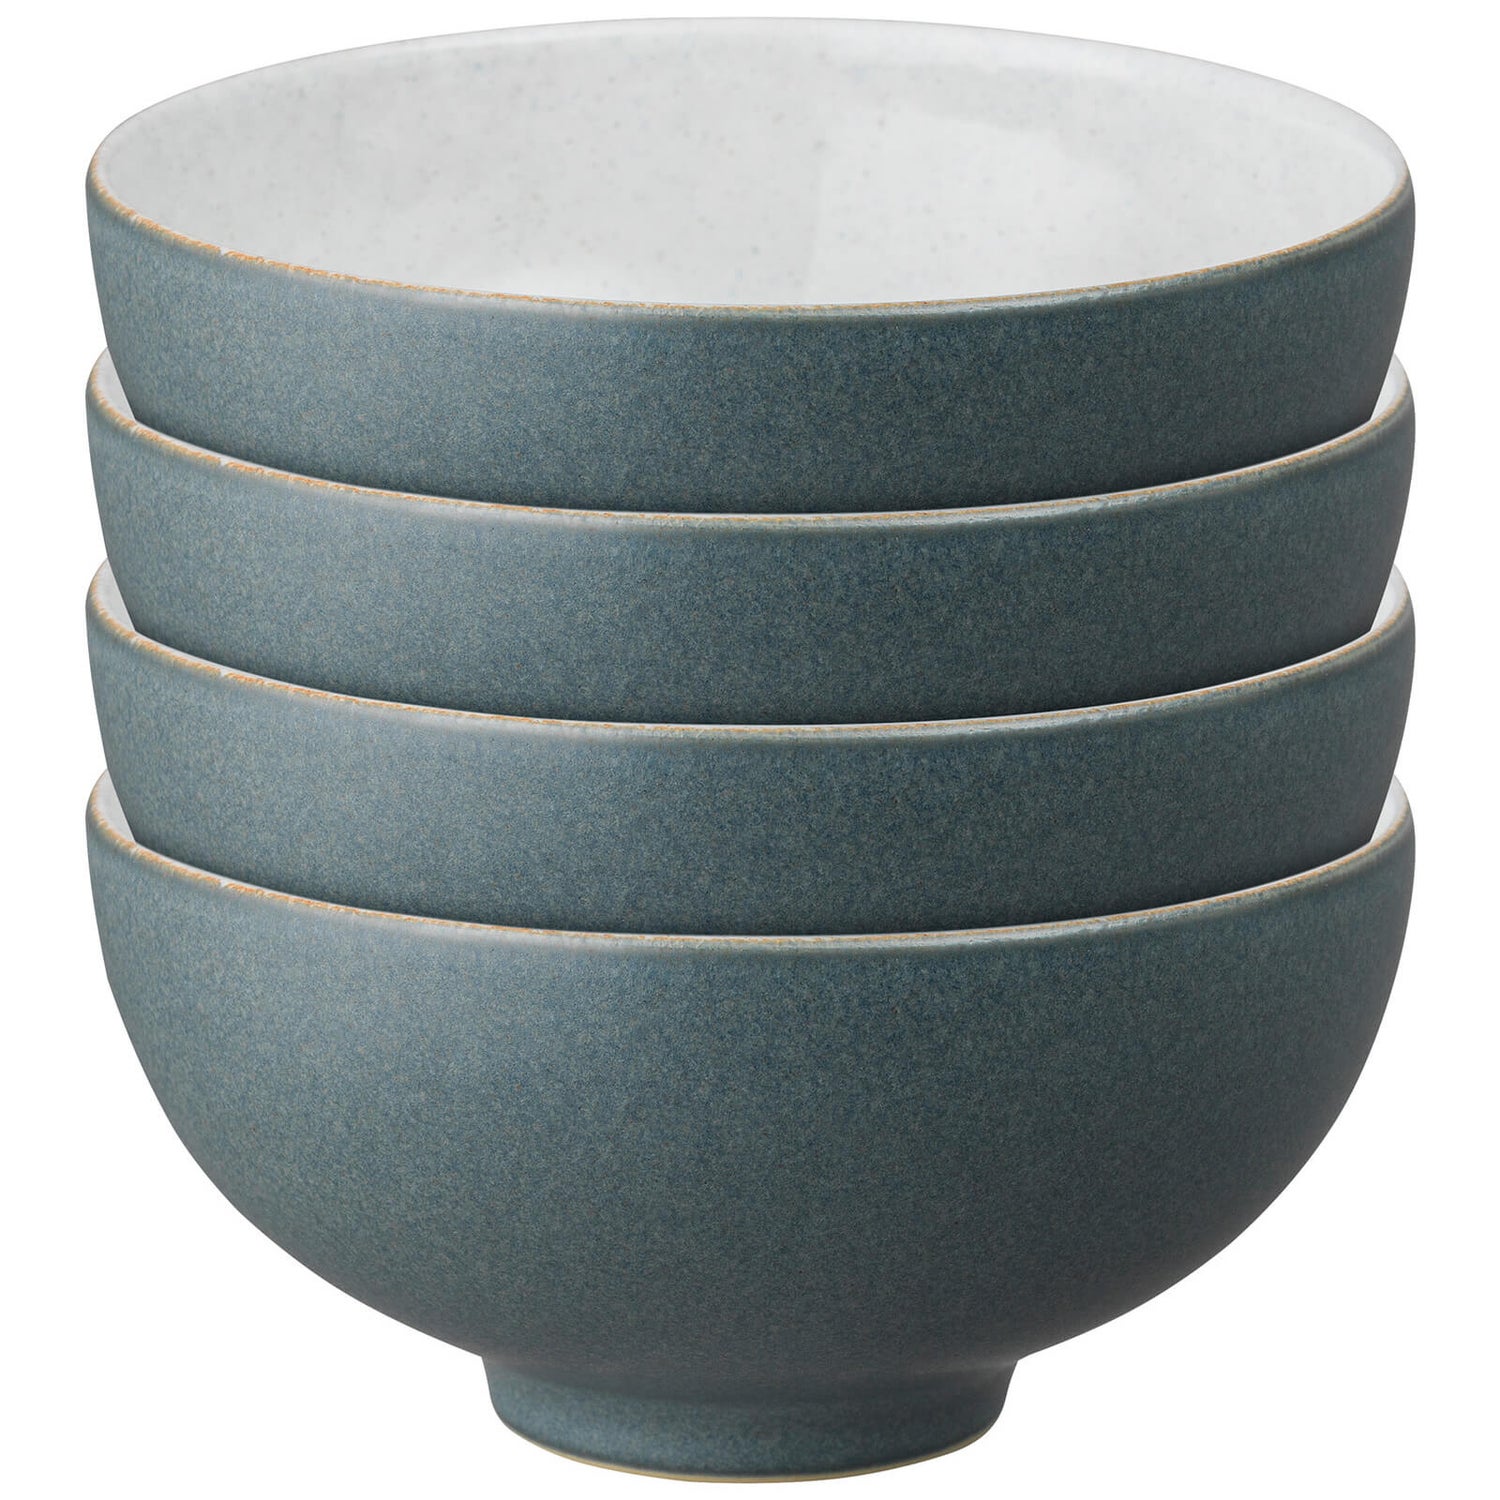 Denby Impression Charcoal Blue Rice Bowls (Set of 4)